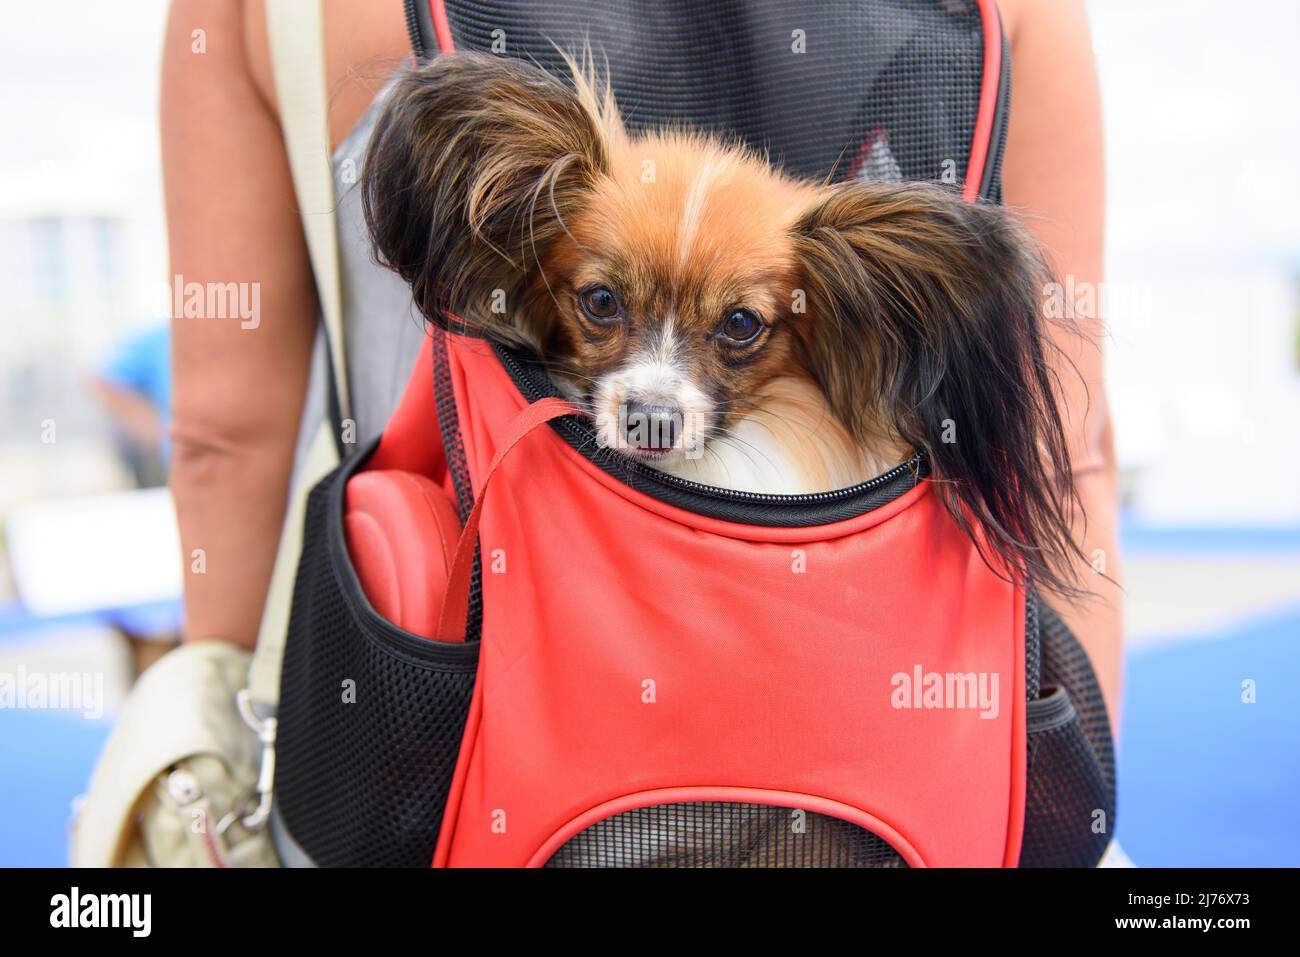 Ein Hund der Papillon-Rasse sitzt in einem roten Rucksack hinter der Herrin. Nahaufnahme. Stockfoto